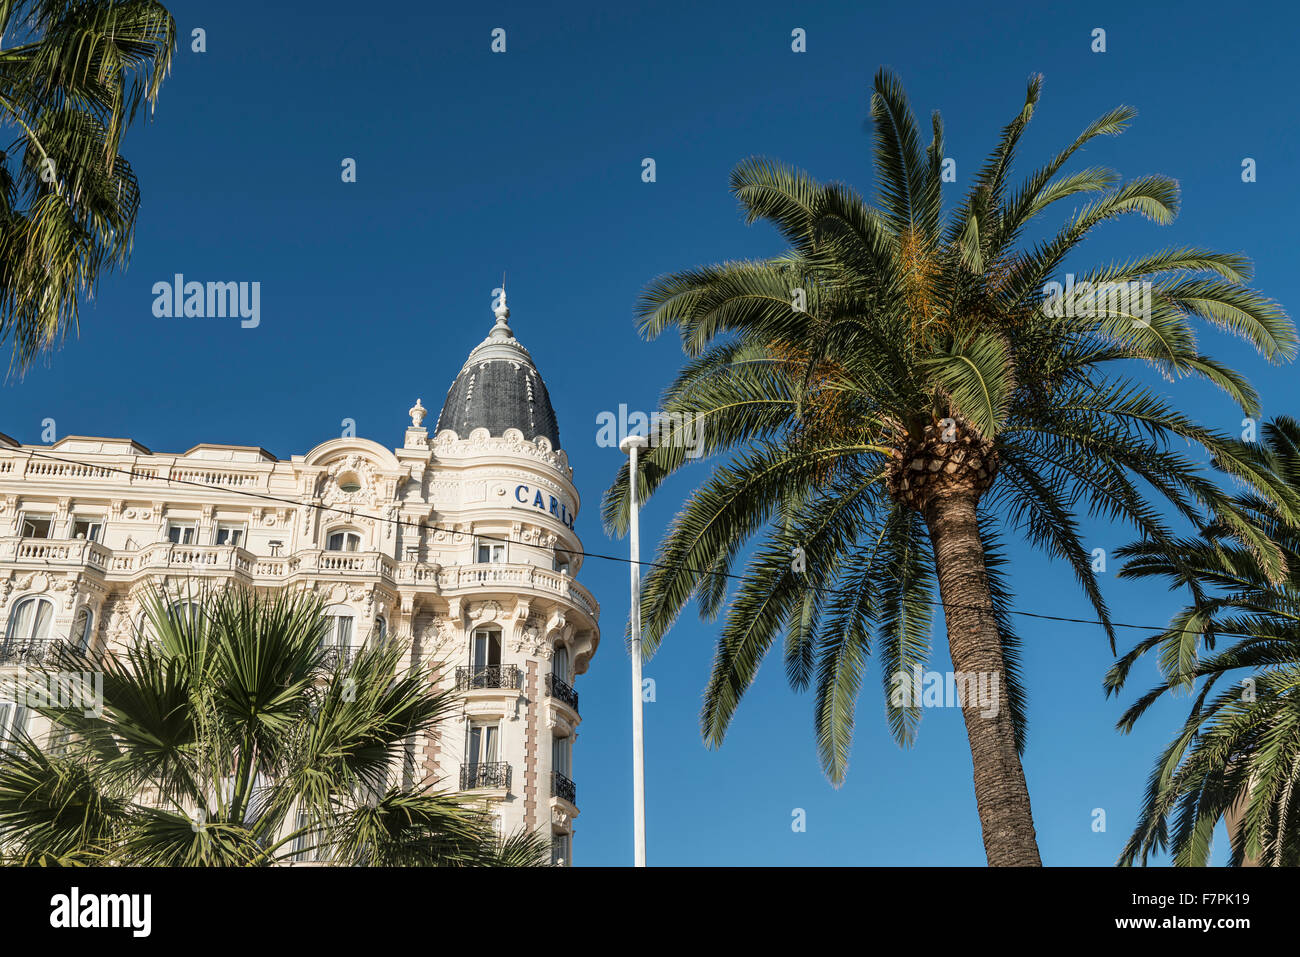 Carlton, Hotel, con fachada, palmera, Cannes, Foto de stock